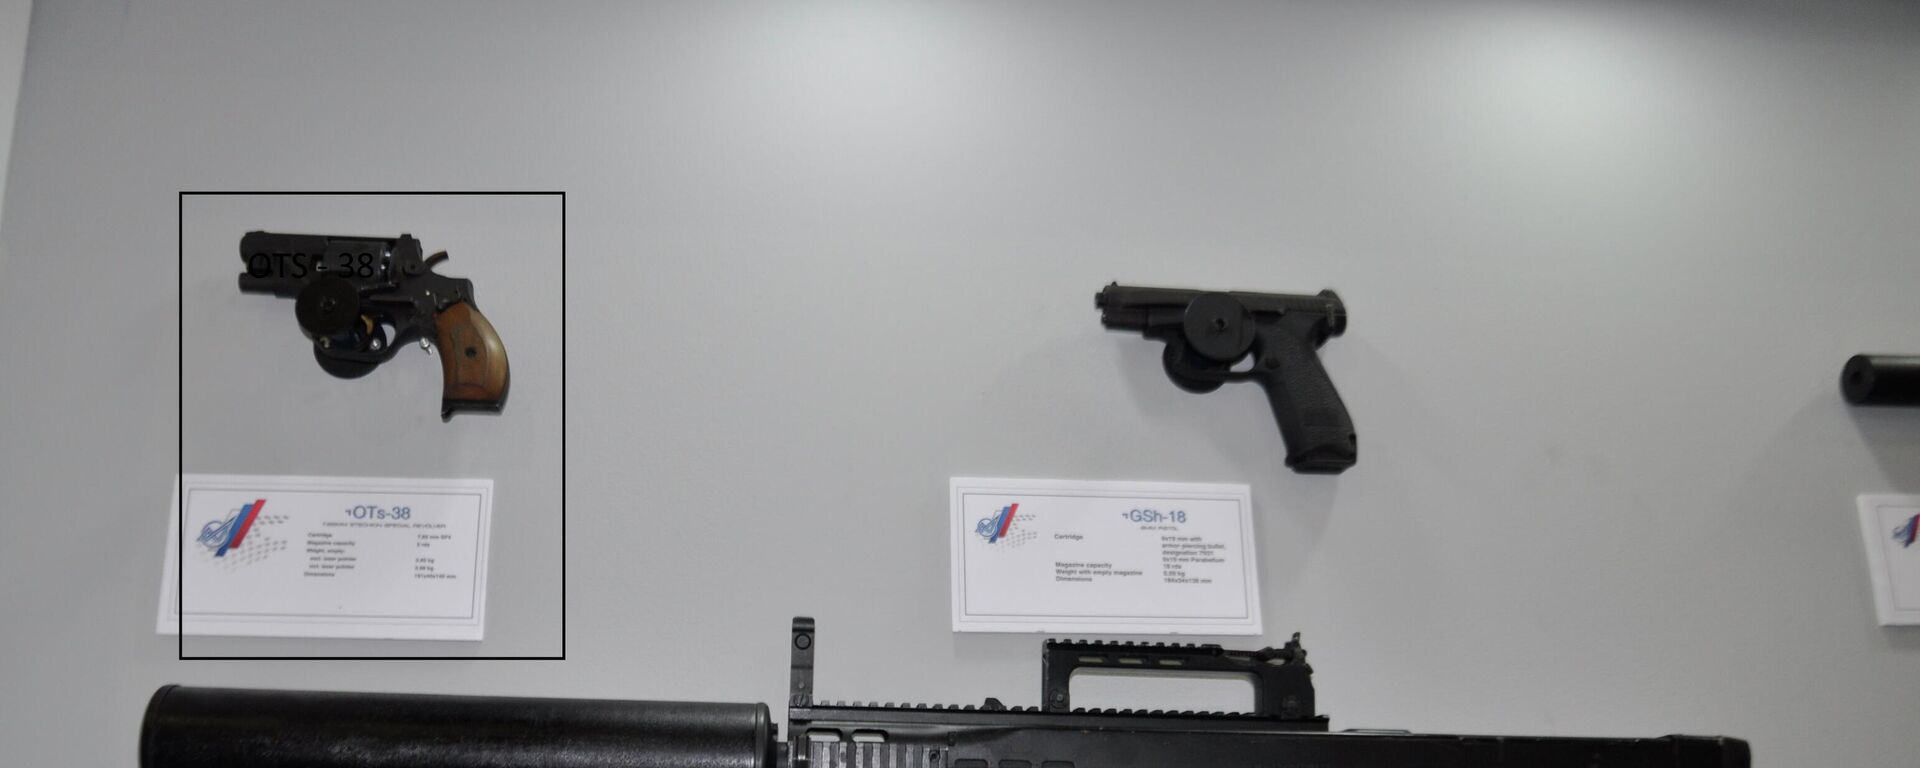 أسلحة روسية خفيفة في معرض إيديكس 2021 - مسدس أو تي إس - 38 الذي يستخدم طلقات إس بي - 4 الصامتة - سبوتنيك عربي, 1920, 06.12.2021